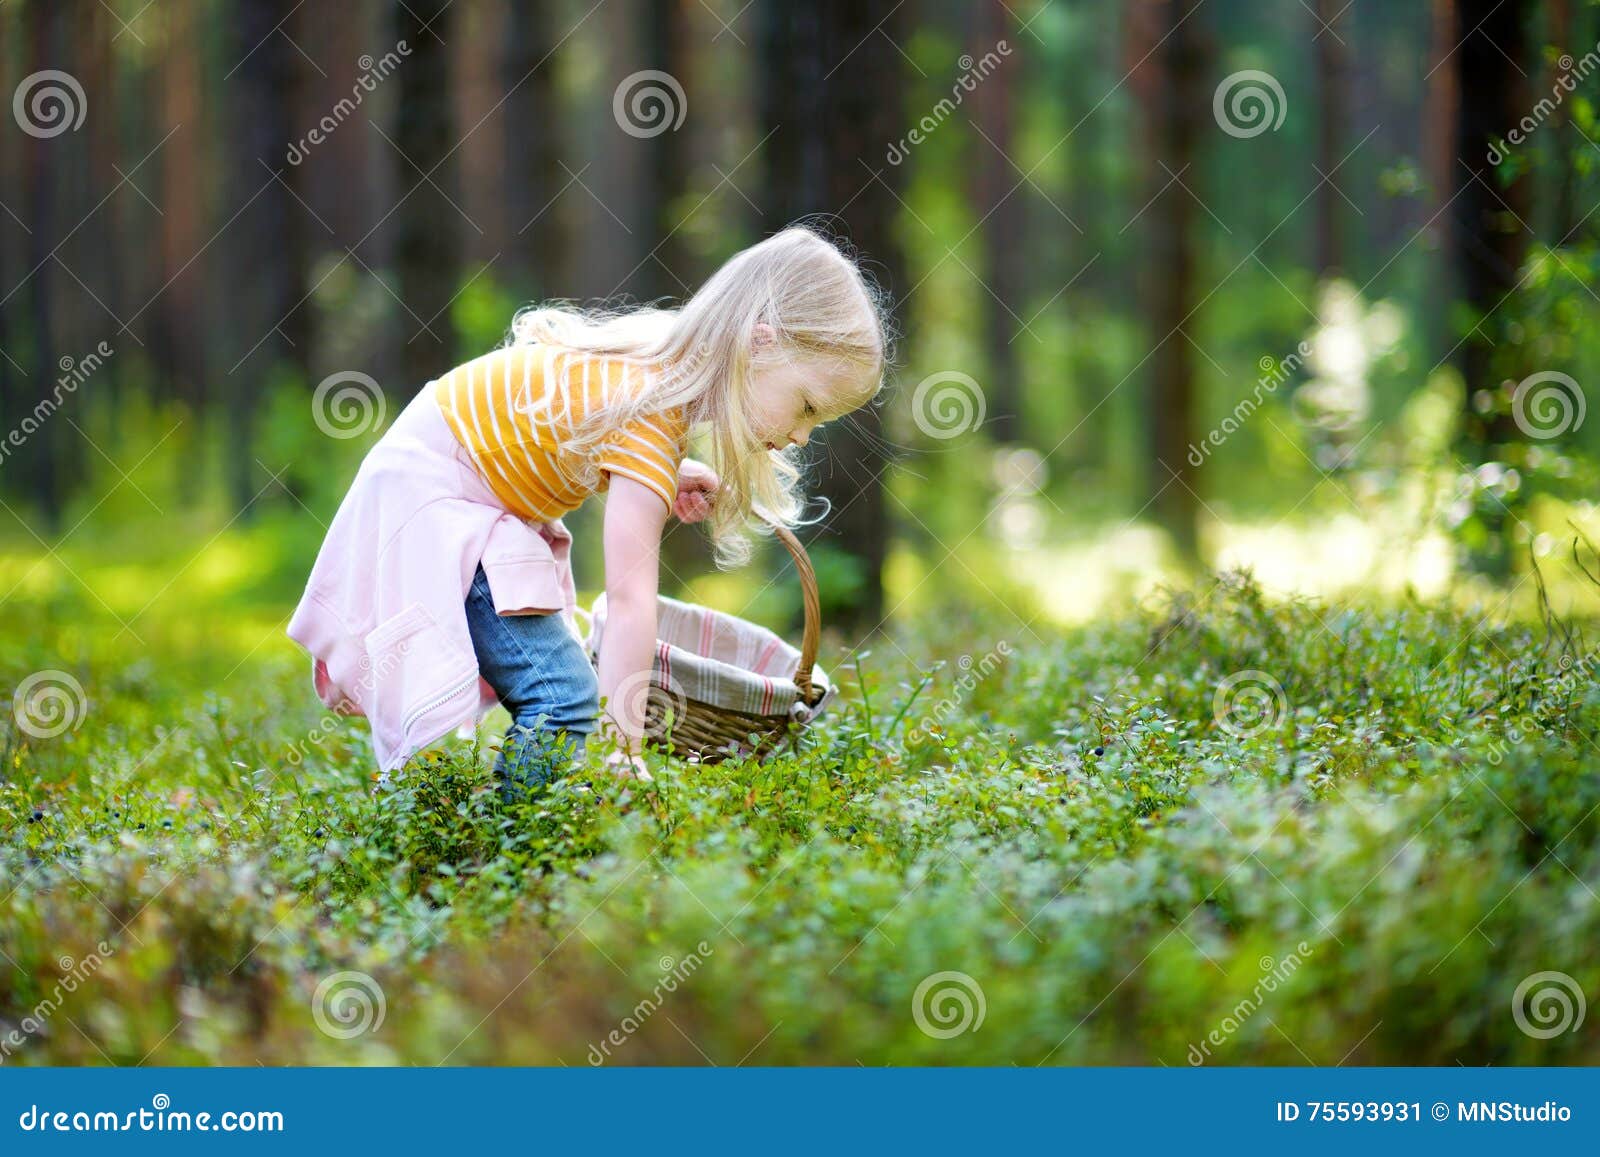 Включи девочку в лесу. Девушка собирает ягоды в лесу. Дети с корзинками в лесу. Девушка в лесу собирает Яноду. Девочка в лесу собирает цветы.